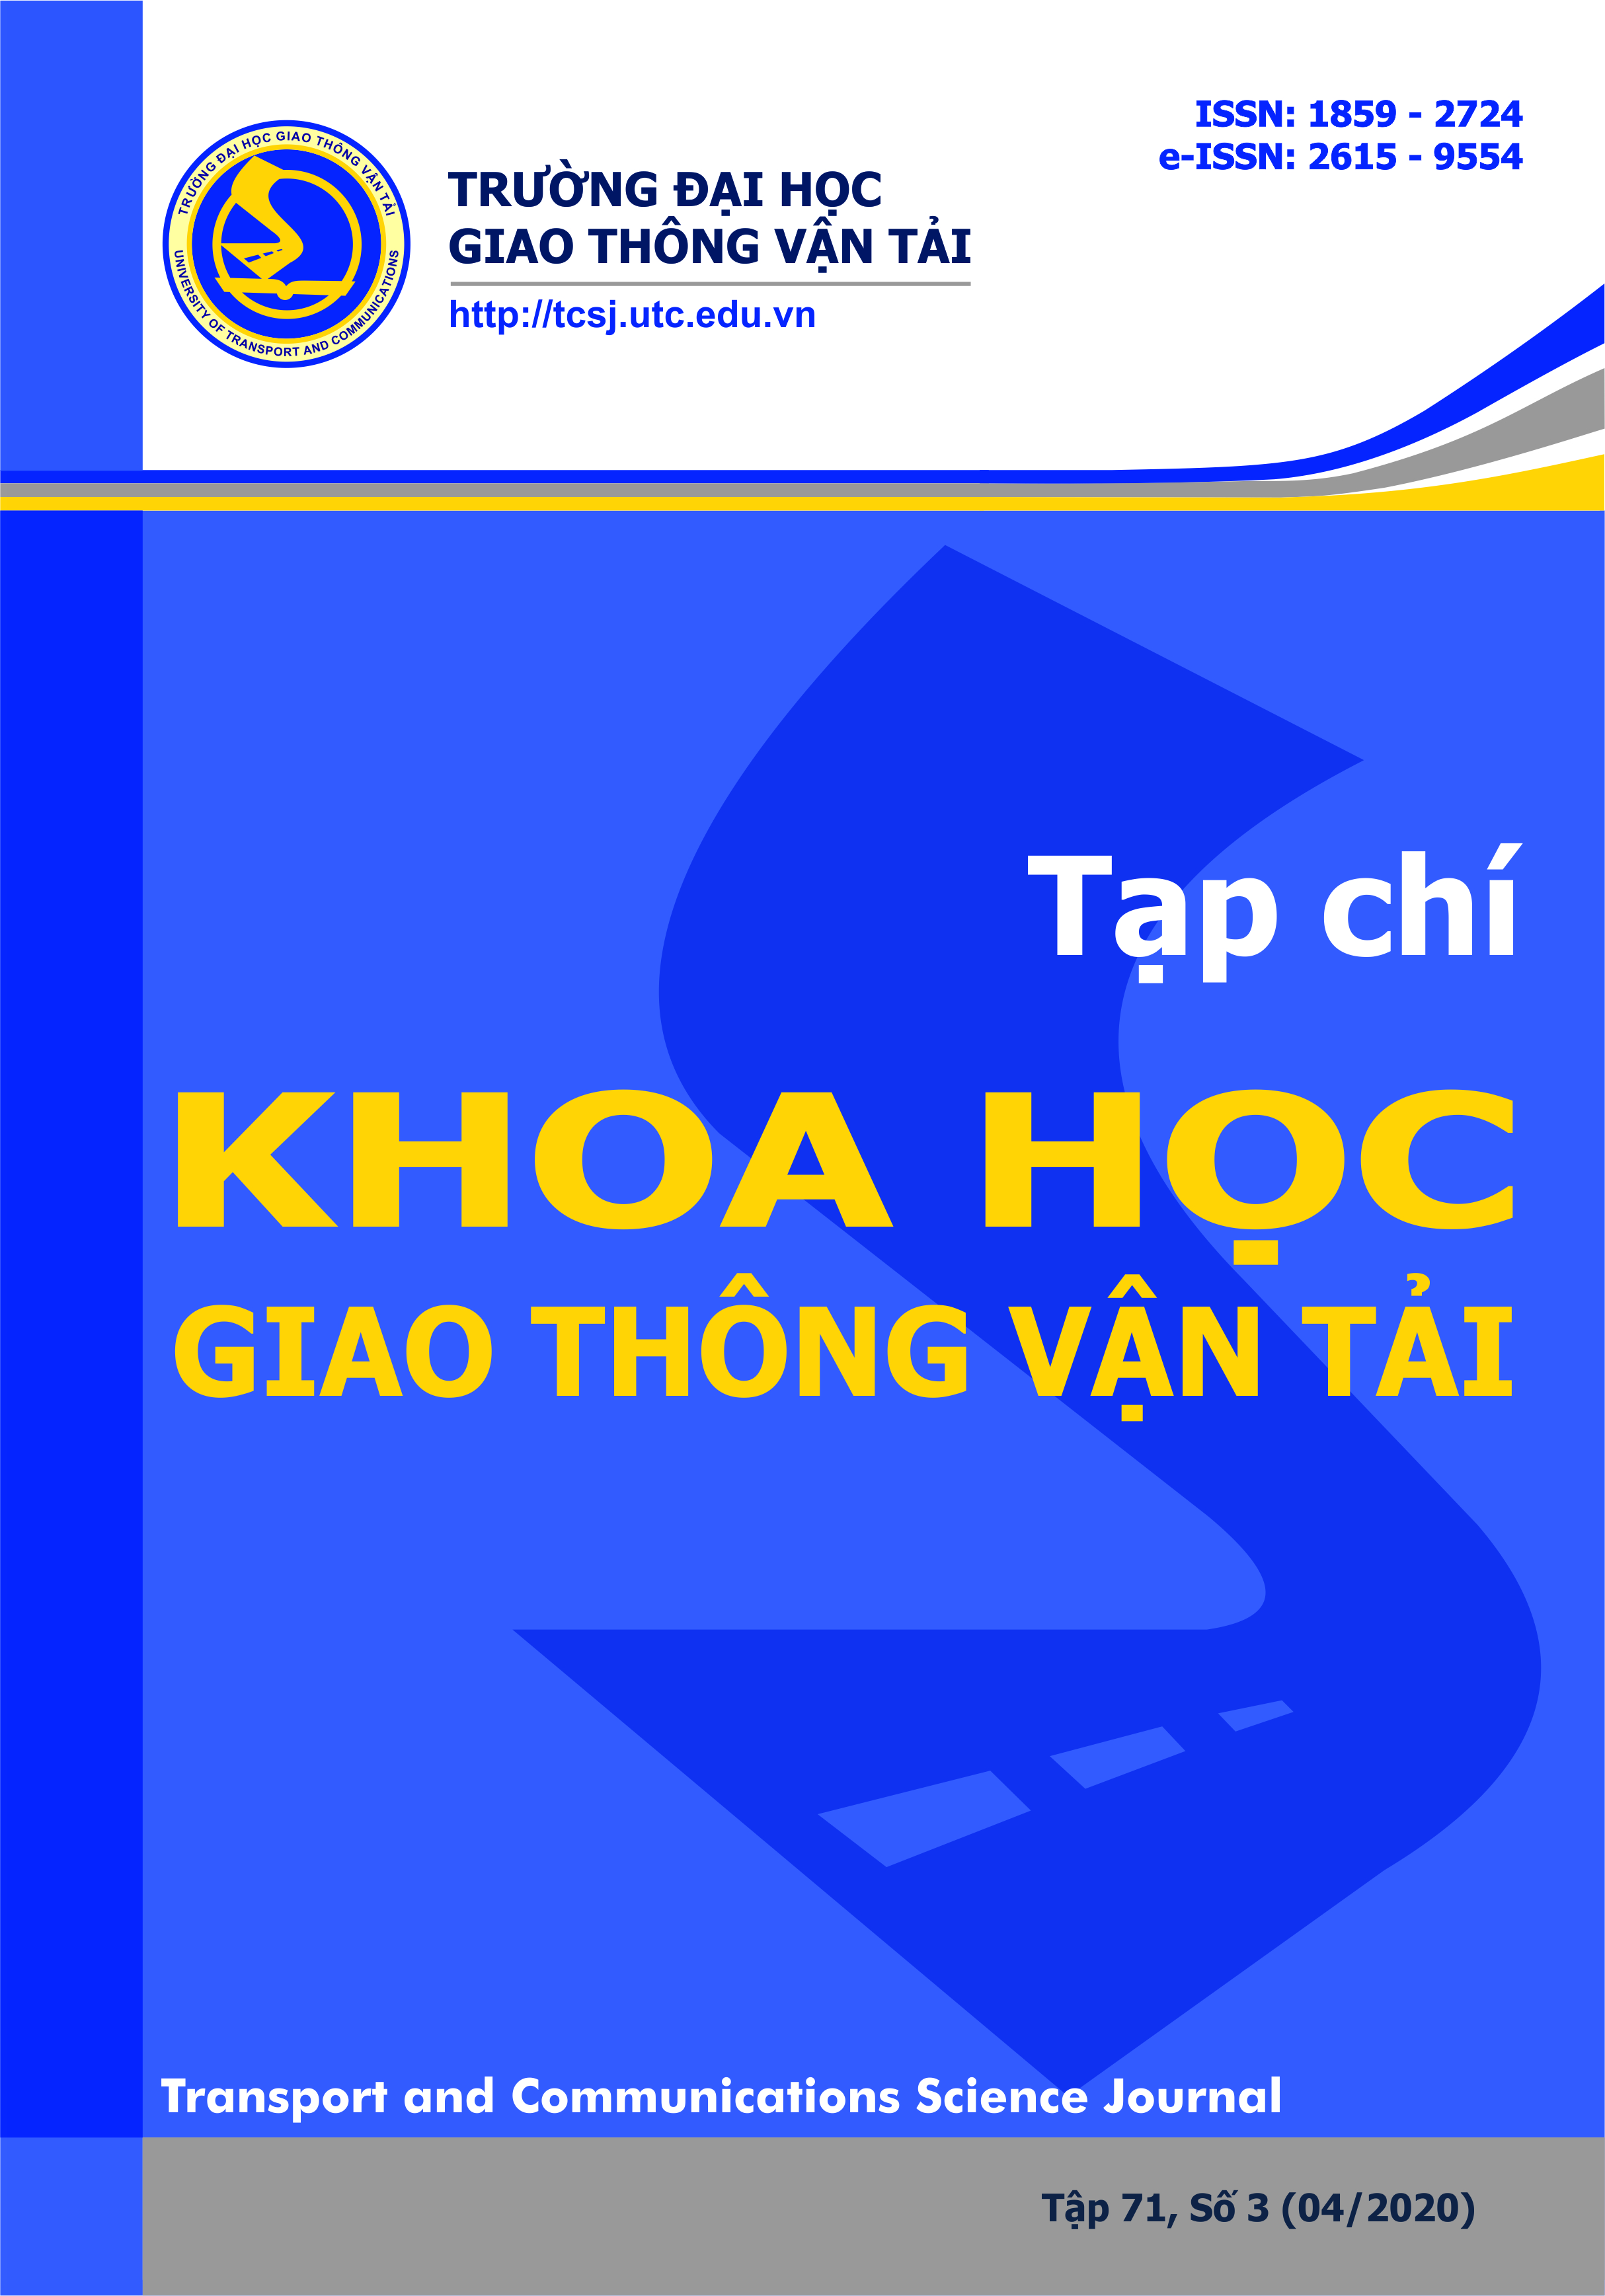 Cơ sở lựa chọn các biểu thức tính toán sức cản cơ bản đơn vị đầu máy diesel 
sử dụng trong ngành đường sắt Việt Nam
